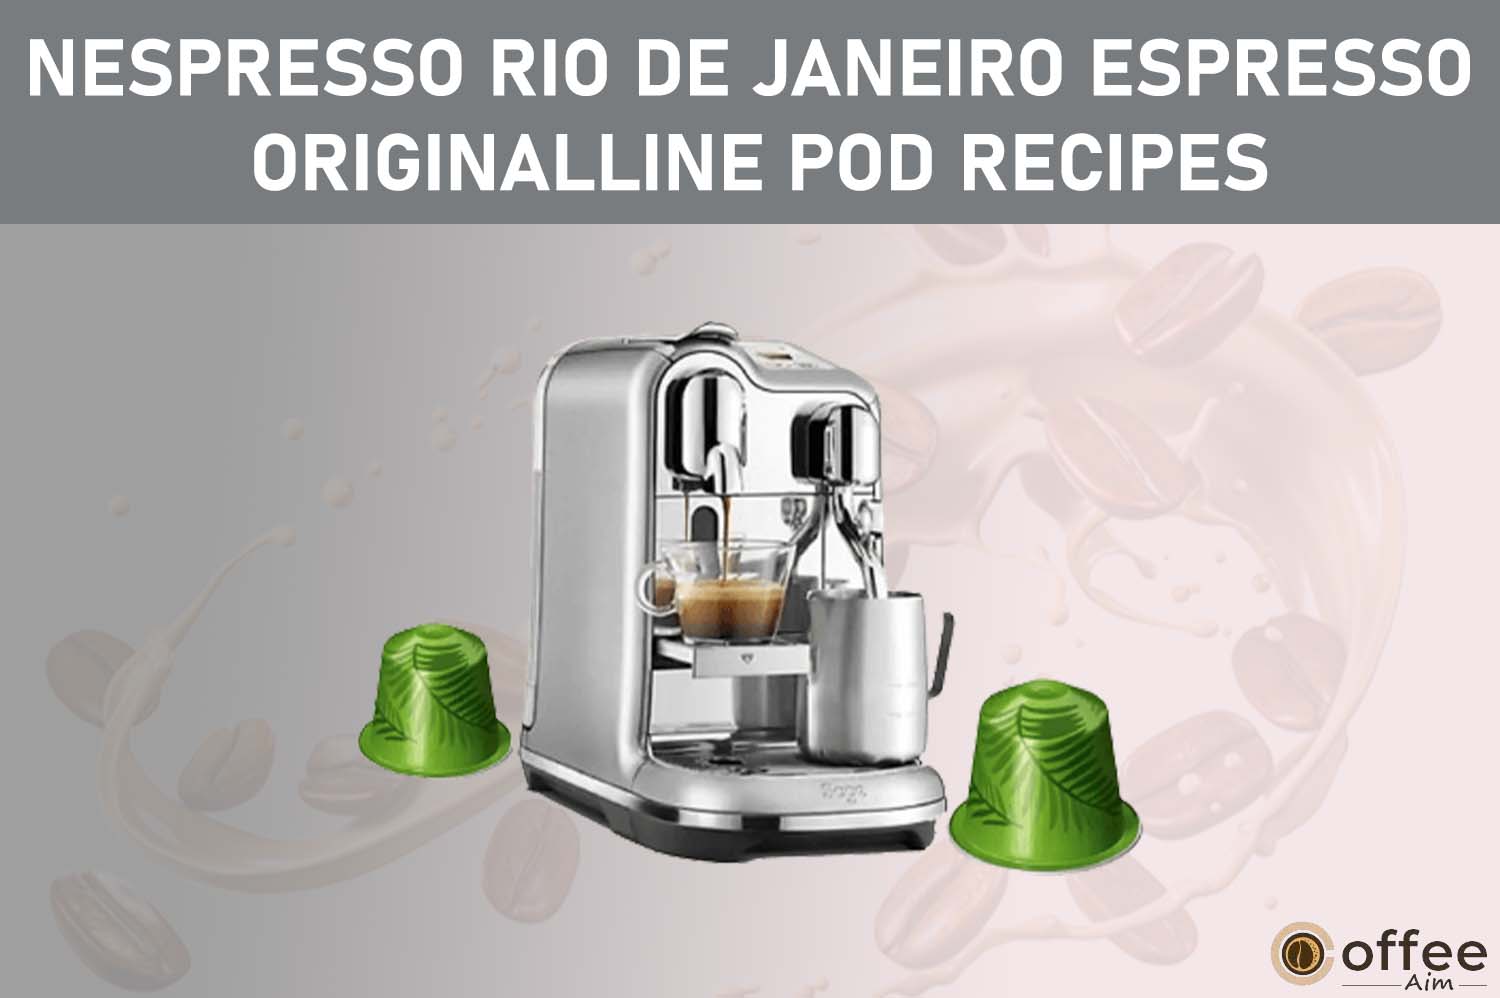 featured image for the article "Nespresso Rio De Janeiro Espresso OriginalLine Pod Recipes"